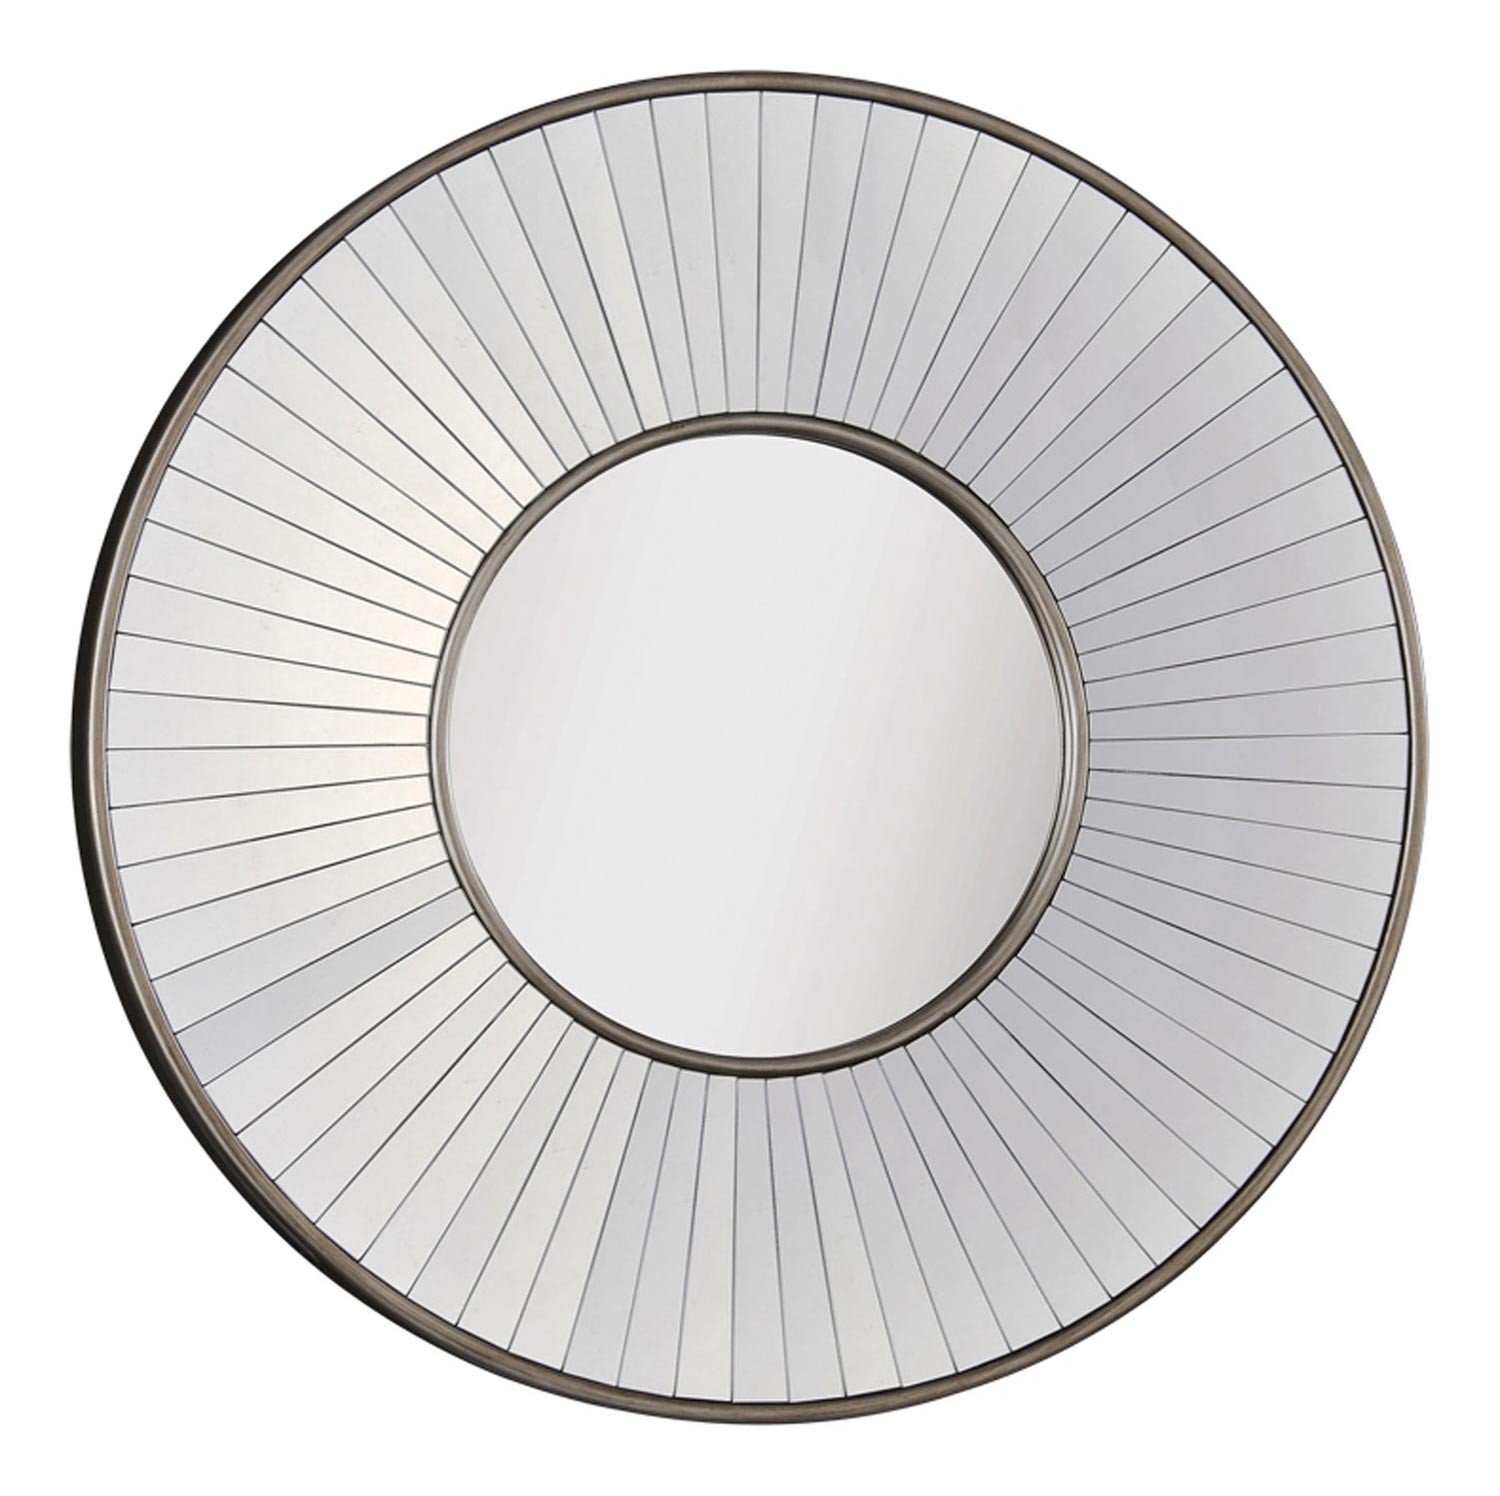 Ren-Wil Round Addison Mirror - Antique Silver